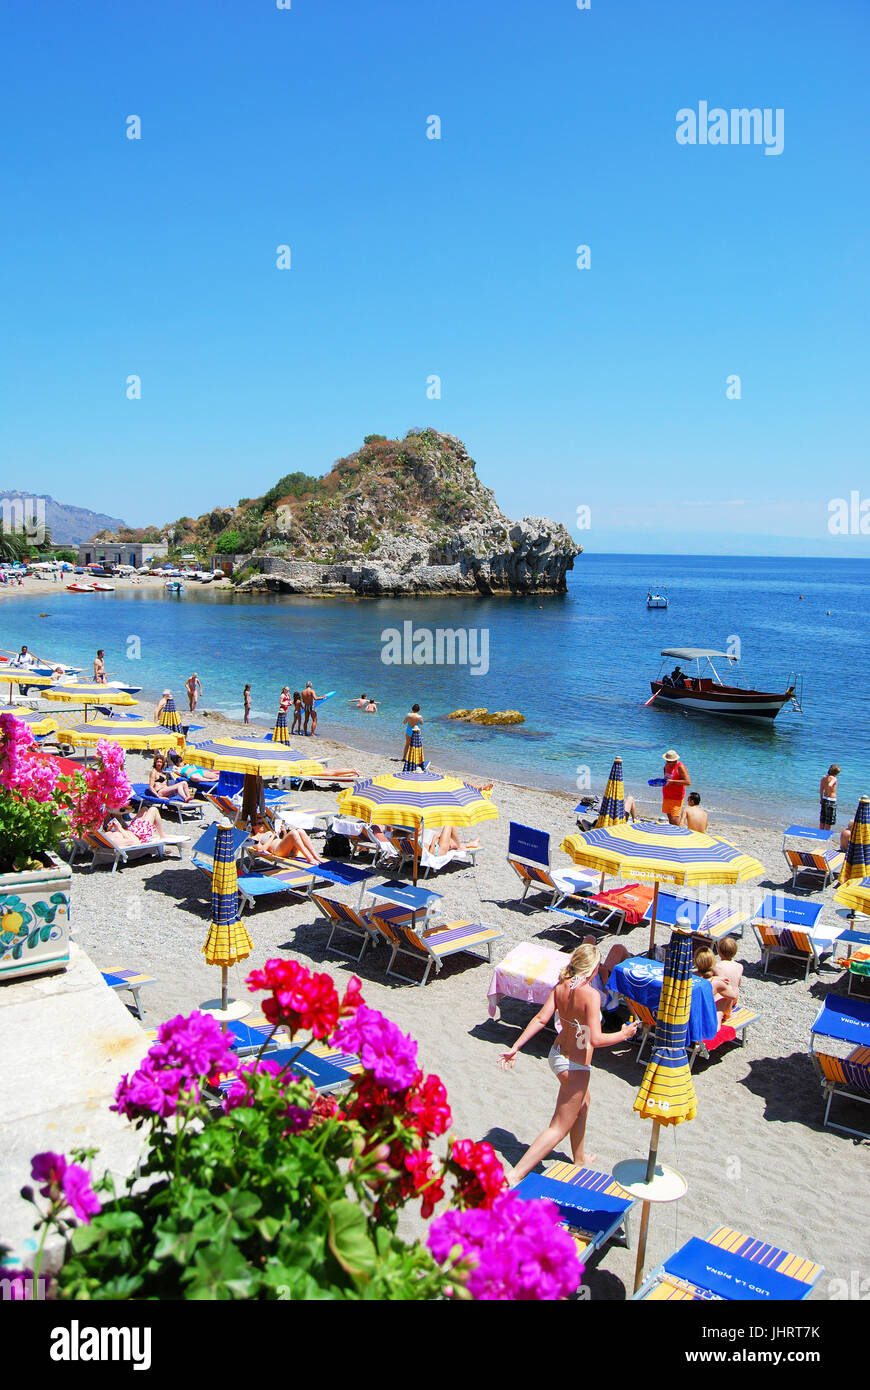 La plage de Mazzarò, Taormina, Messina Province, Sicile, Italie Banque D'Images